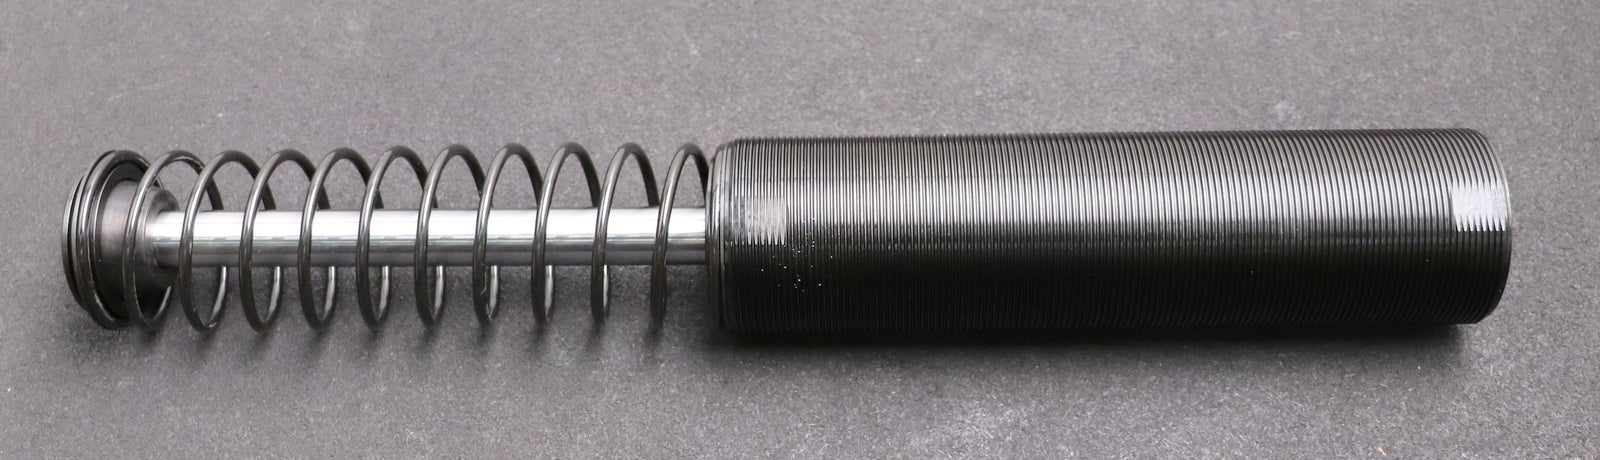 Bild des Artikels ENIDINE-Hydraulischer-Stoßdämpfer-shock-absorber-MF222051-M24x2x150mm